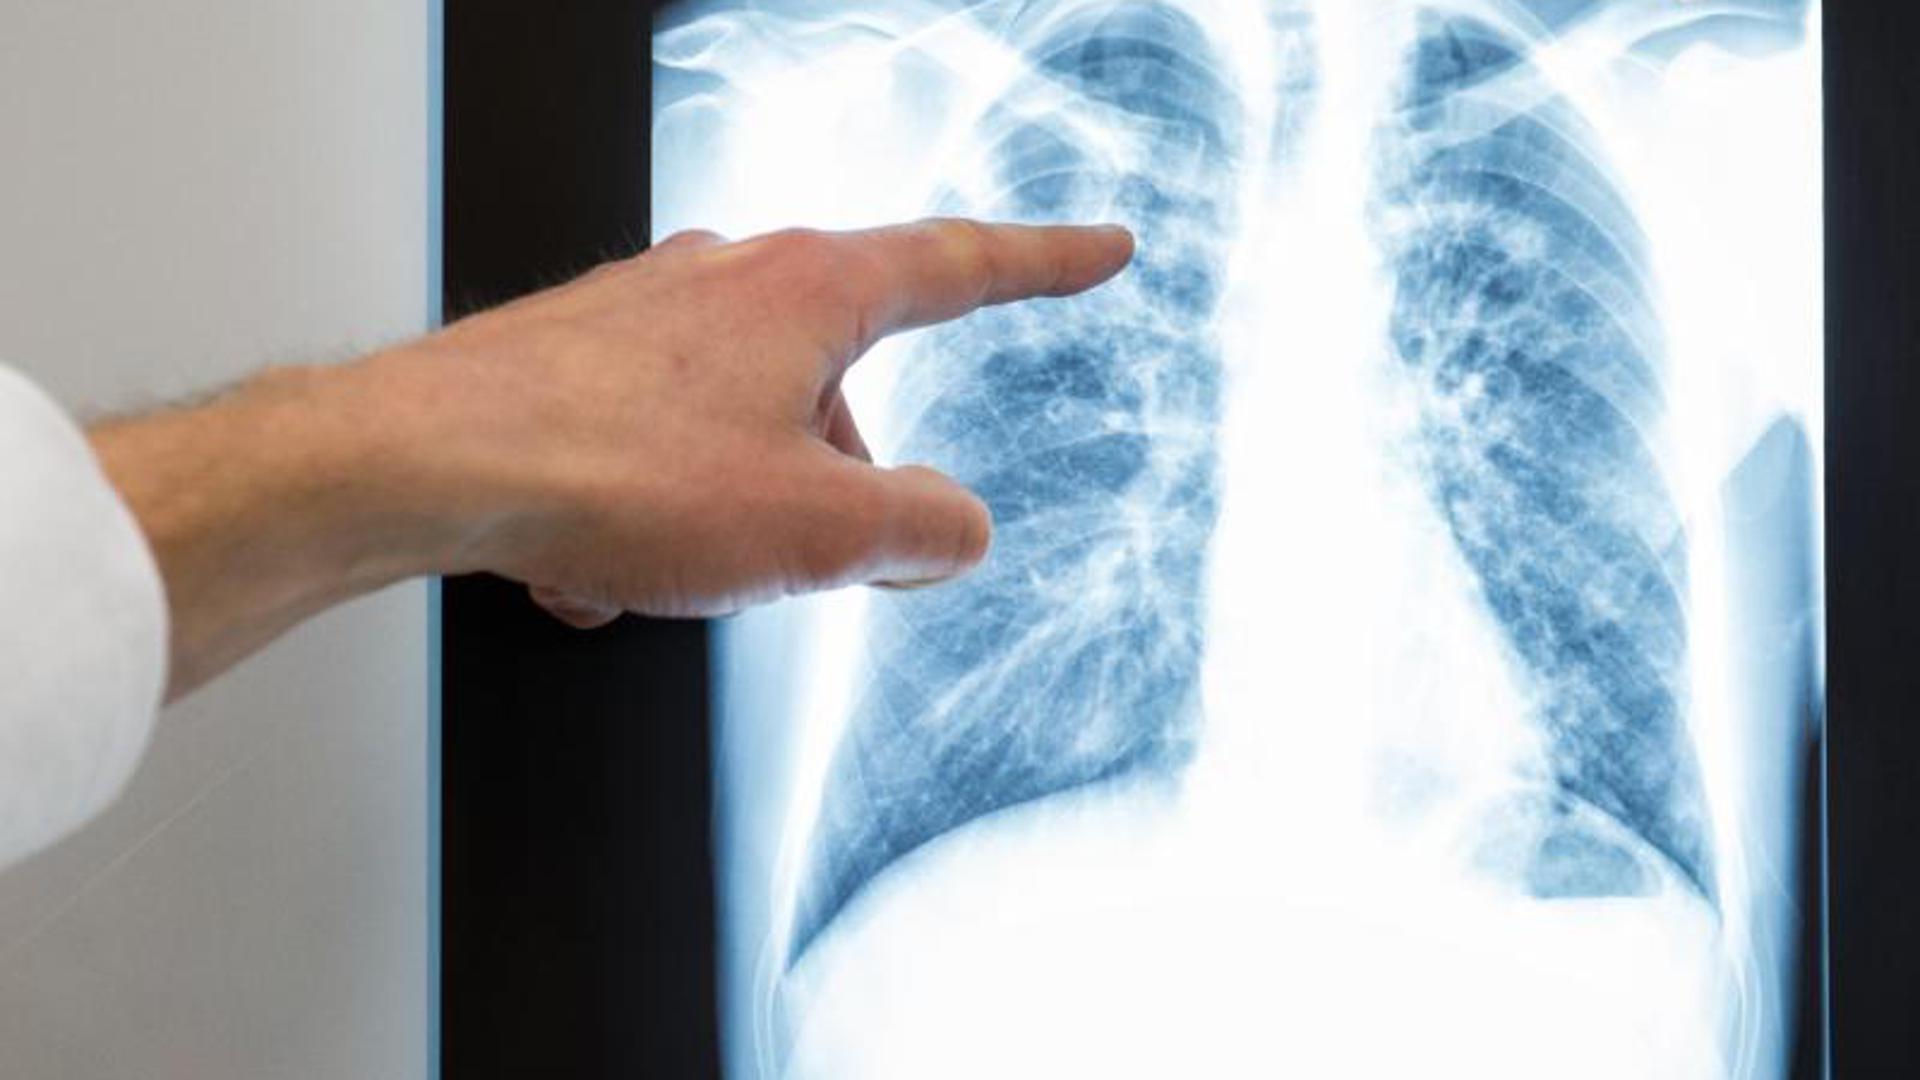 Ein Arzt zeigt auf das Röntgenbild einer Lunge